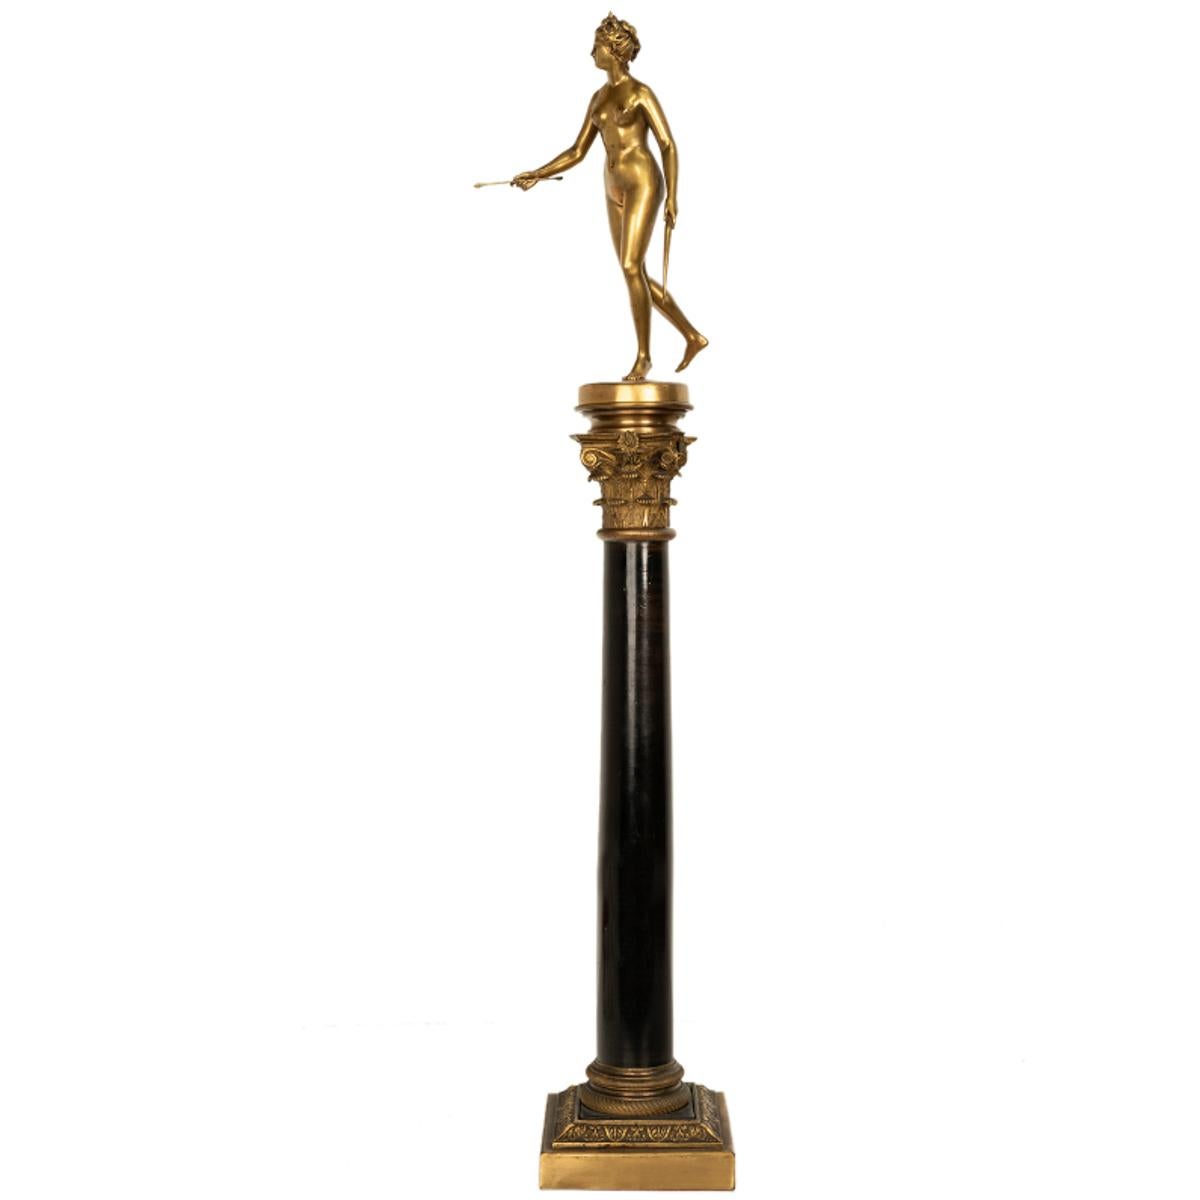 Ferdinand Barbedienne Figurative Sculpture – Antike französische Grand Tour-Statue der Jägerin Diana aus vergoldeter Bronze auf der Säule Diana, 1838